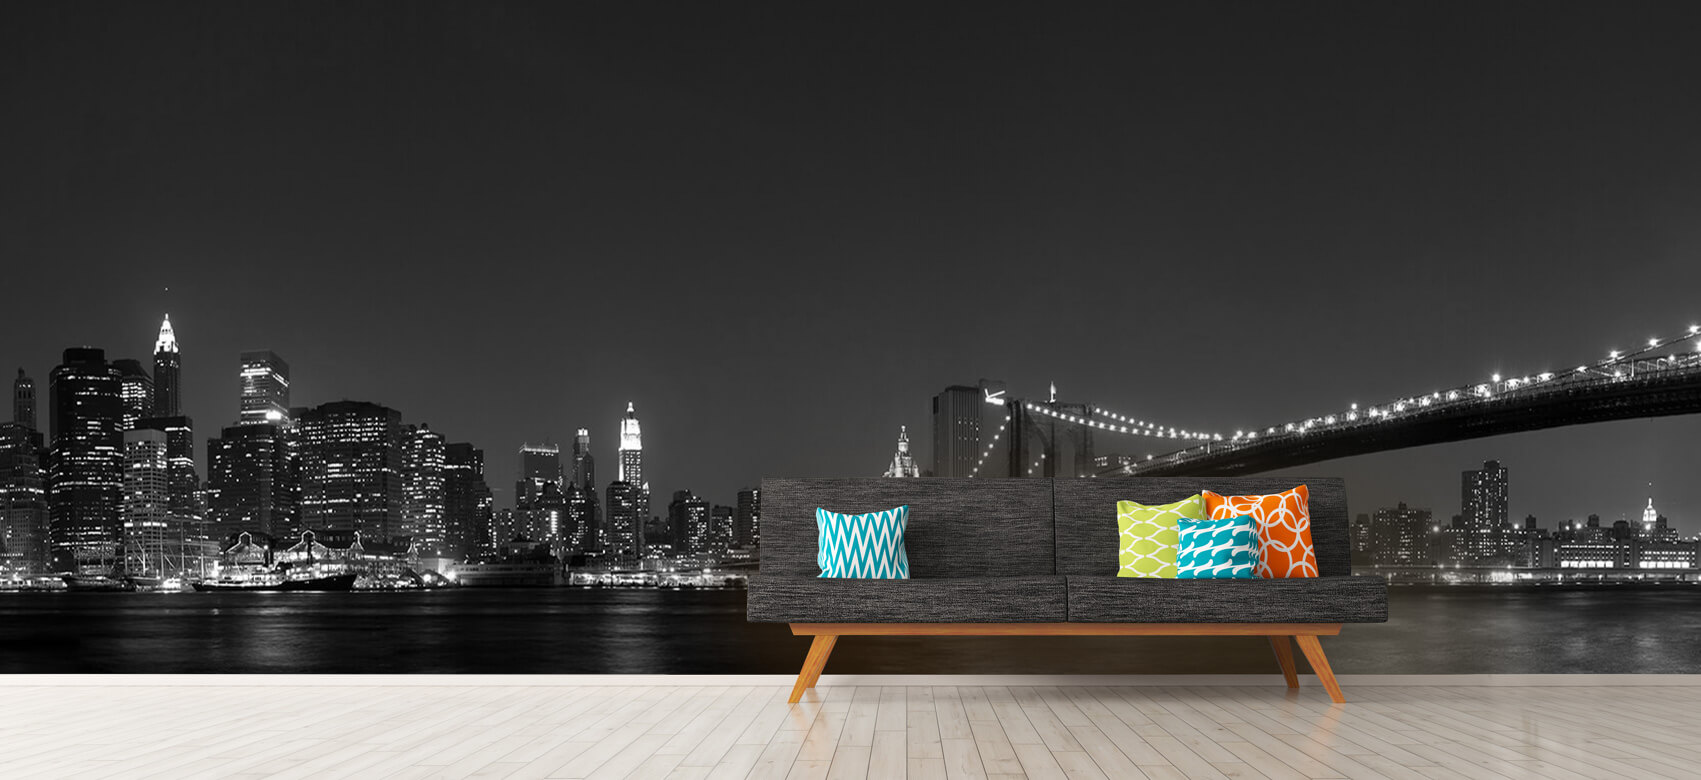 Nacht Papel pintado con El horizonte de Manhattan y el puente de Brooklyn - Habitación de adolescentes 13